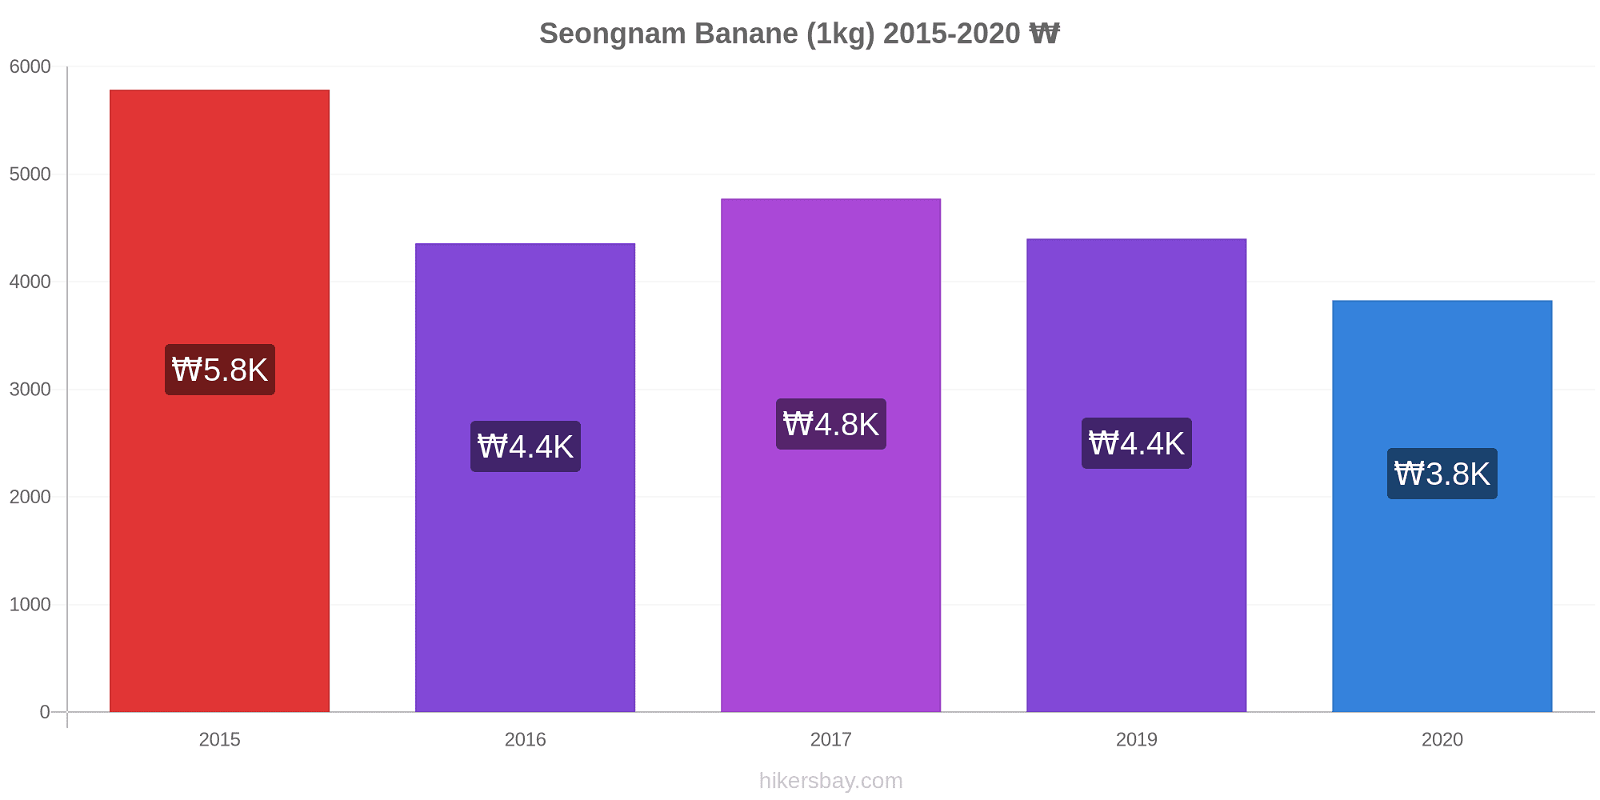 Seongnam variazioni di prezzo Banana (1kg) hikersbay.com